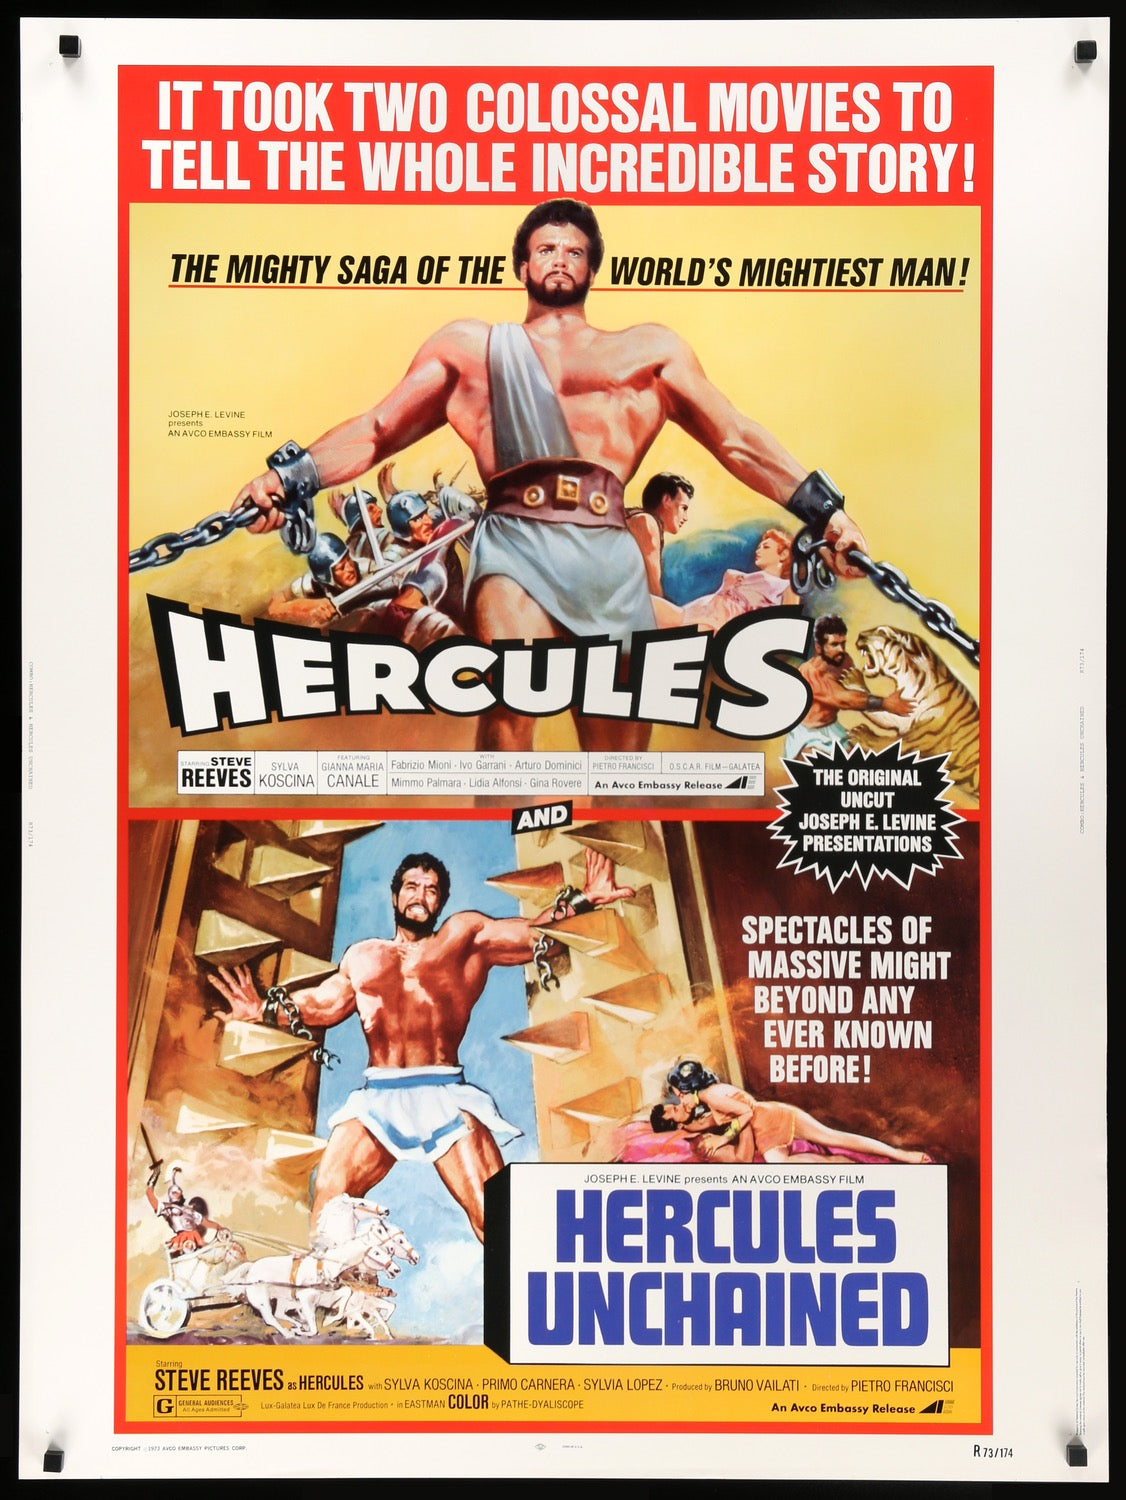 Hercules (1959) / Hercules Unchained (1959) original movie poster for sale at Original Film Art